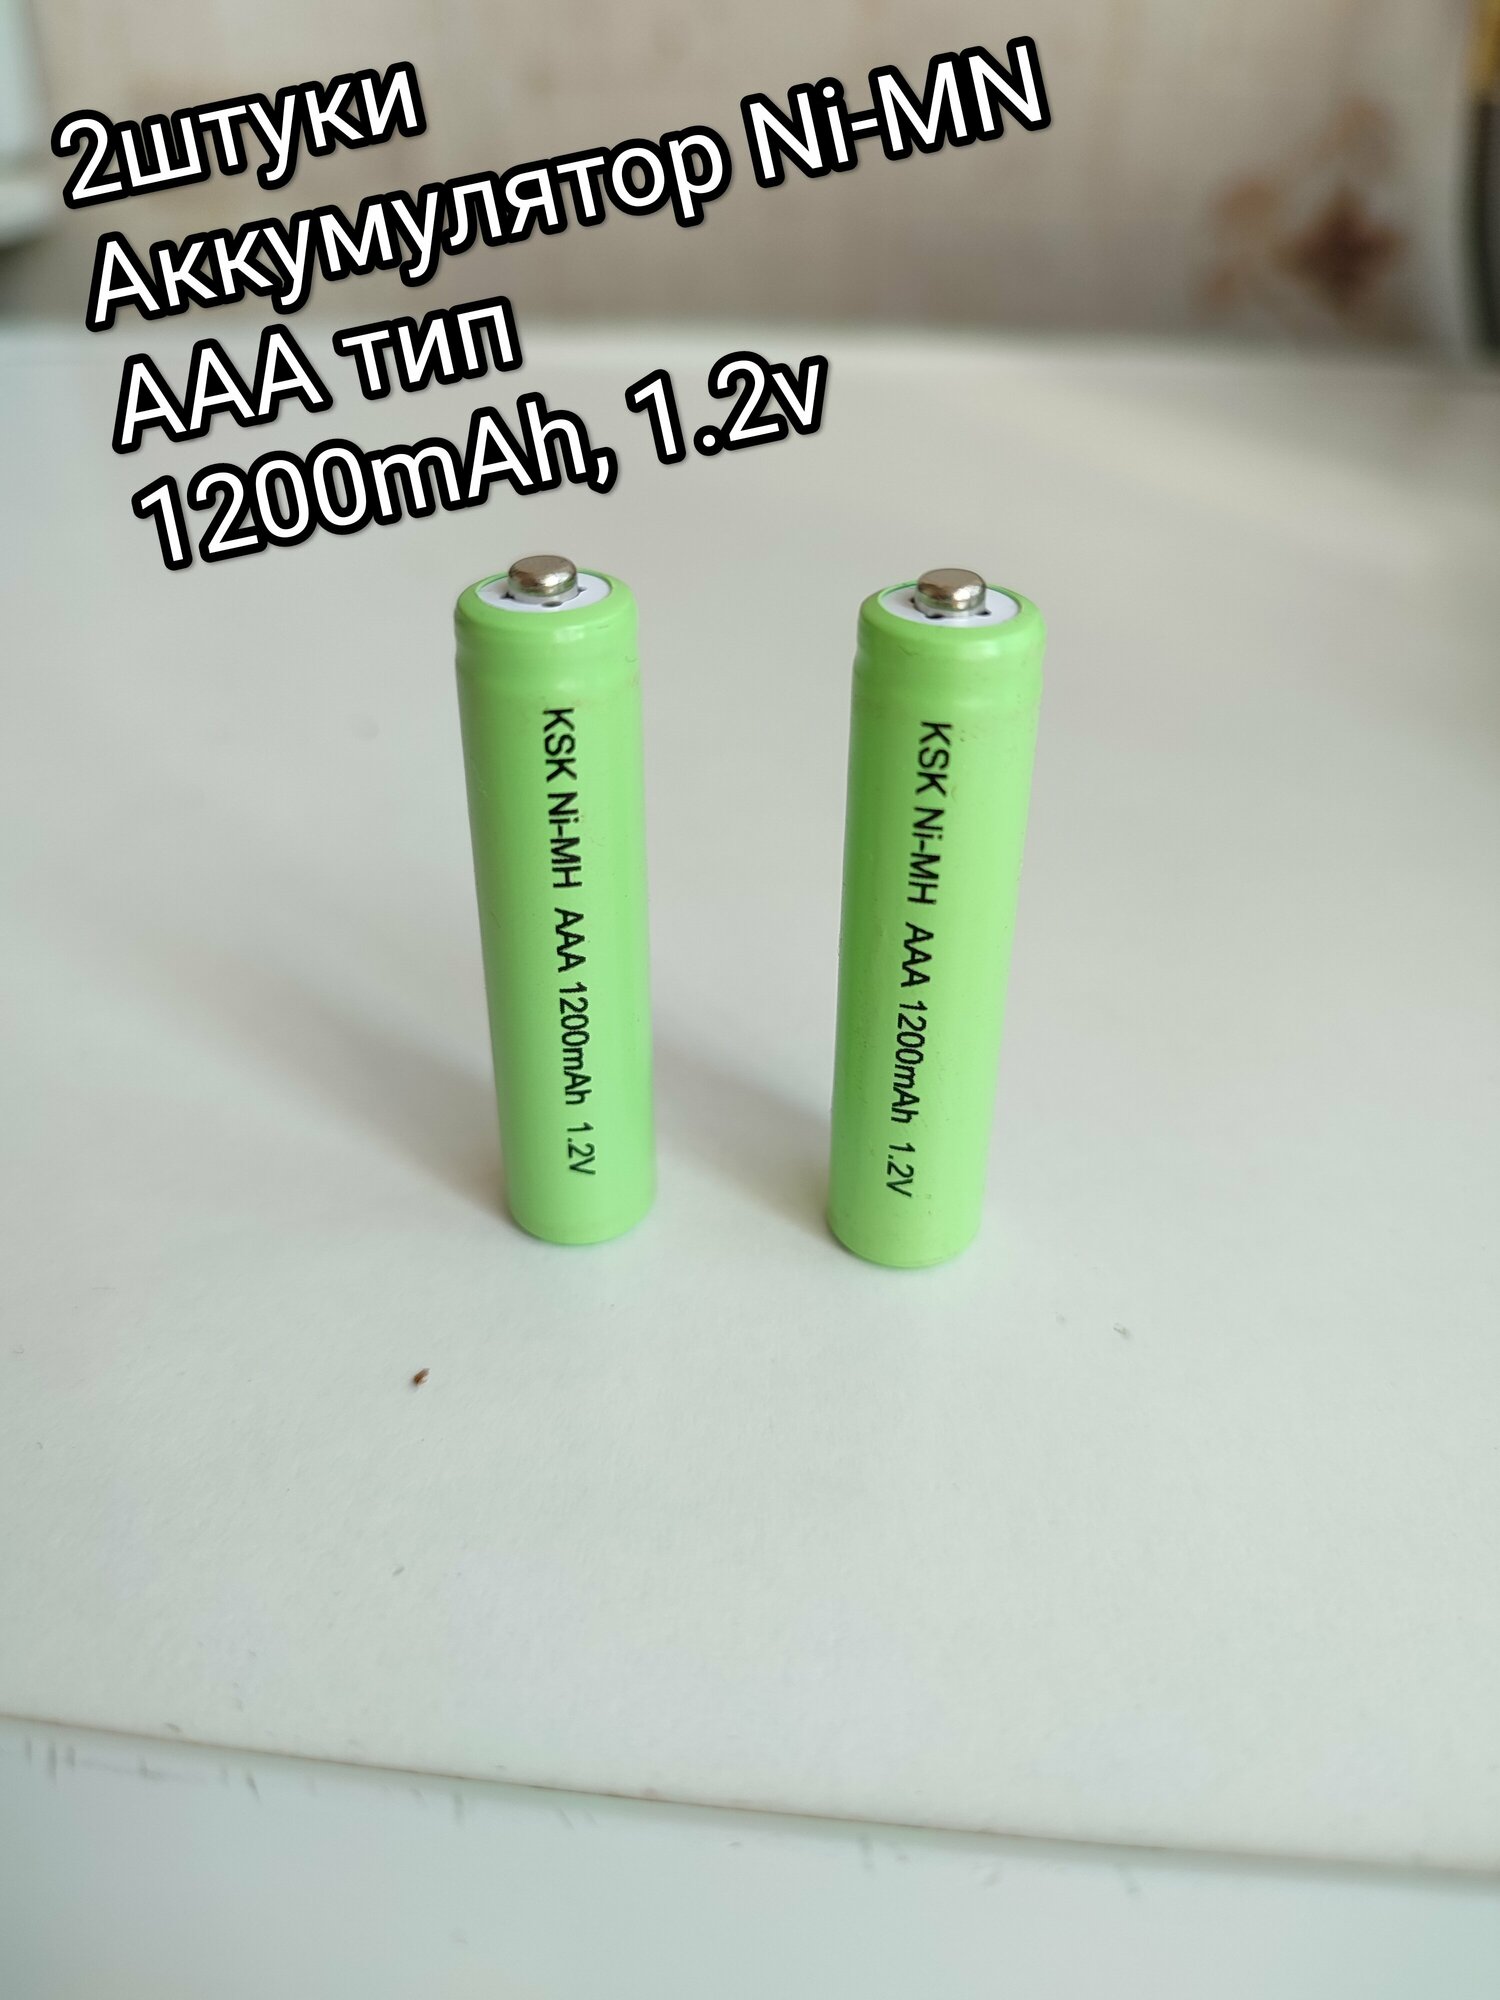 2 шт аккумуляторная батарея (1,2 В AAA 1200 мАч)